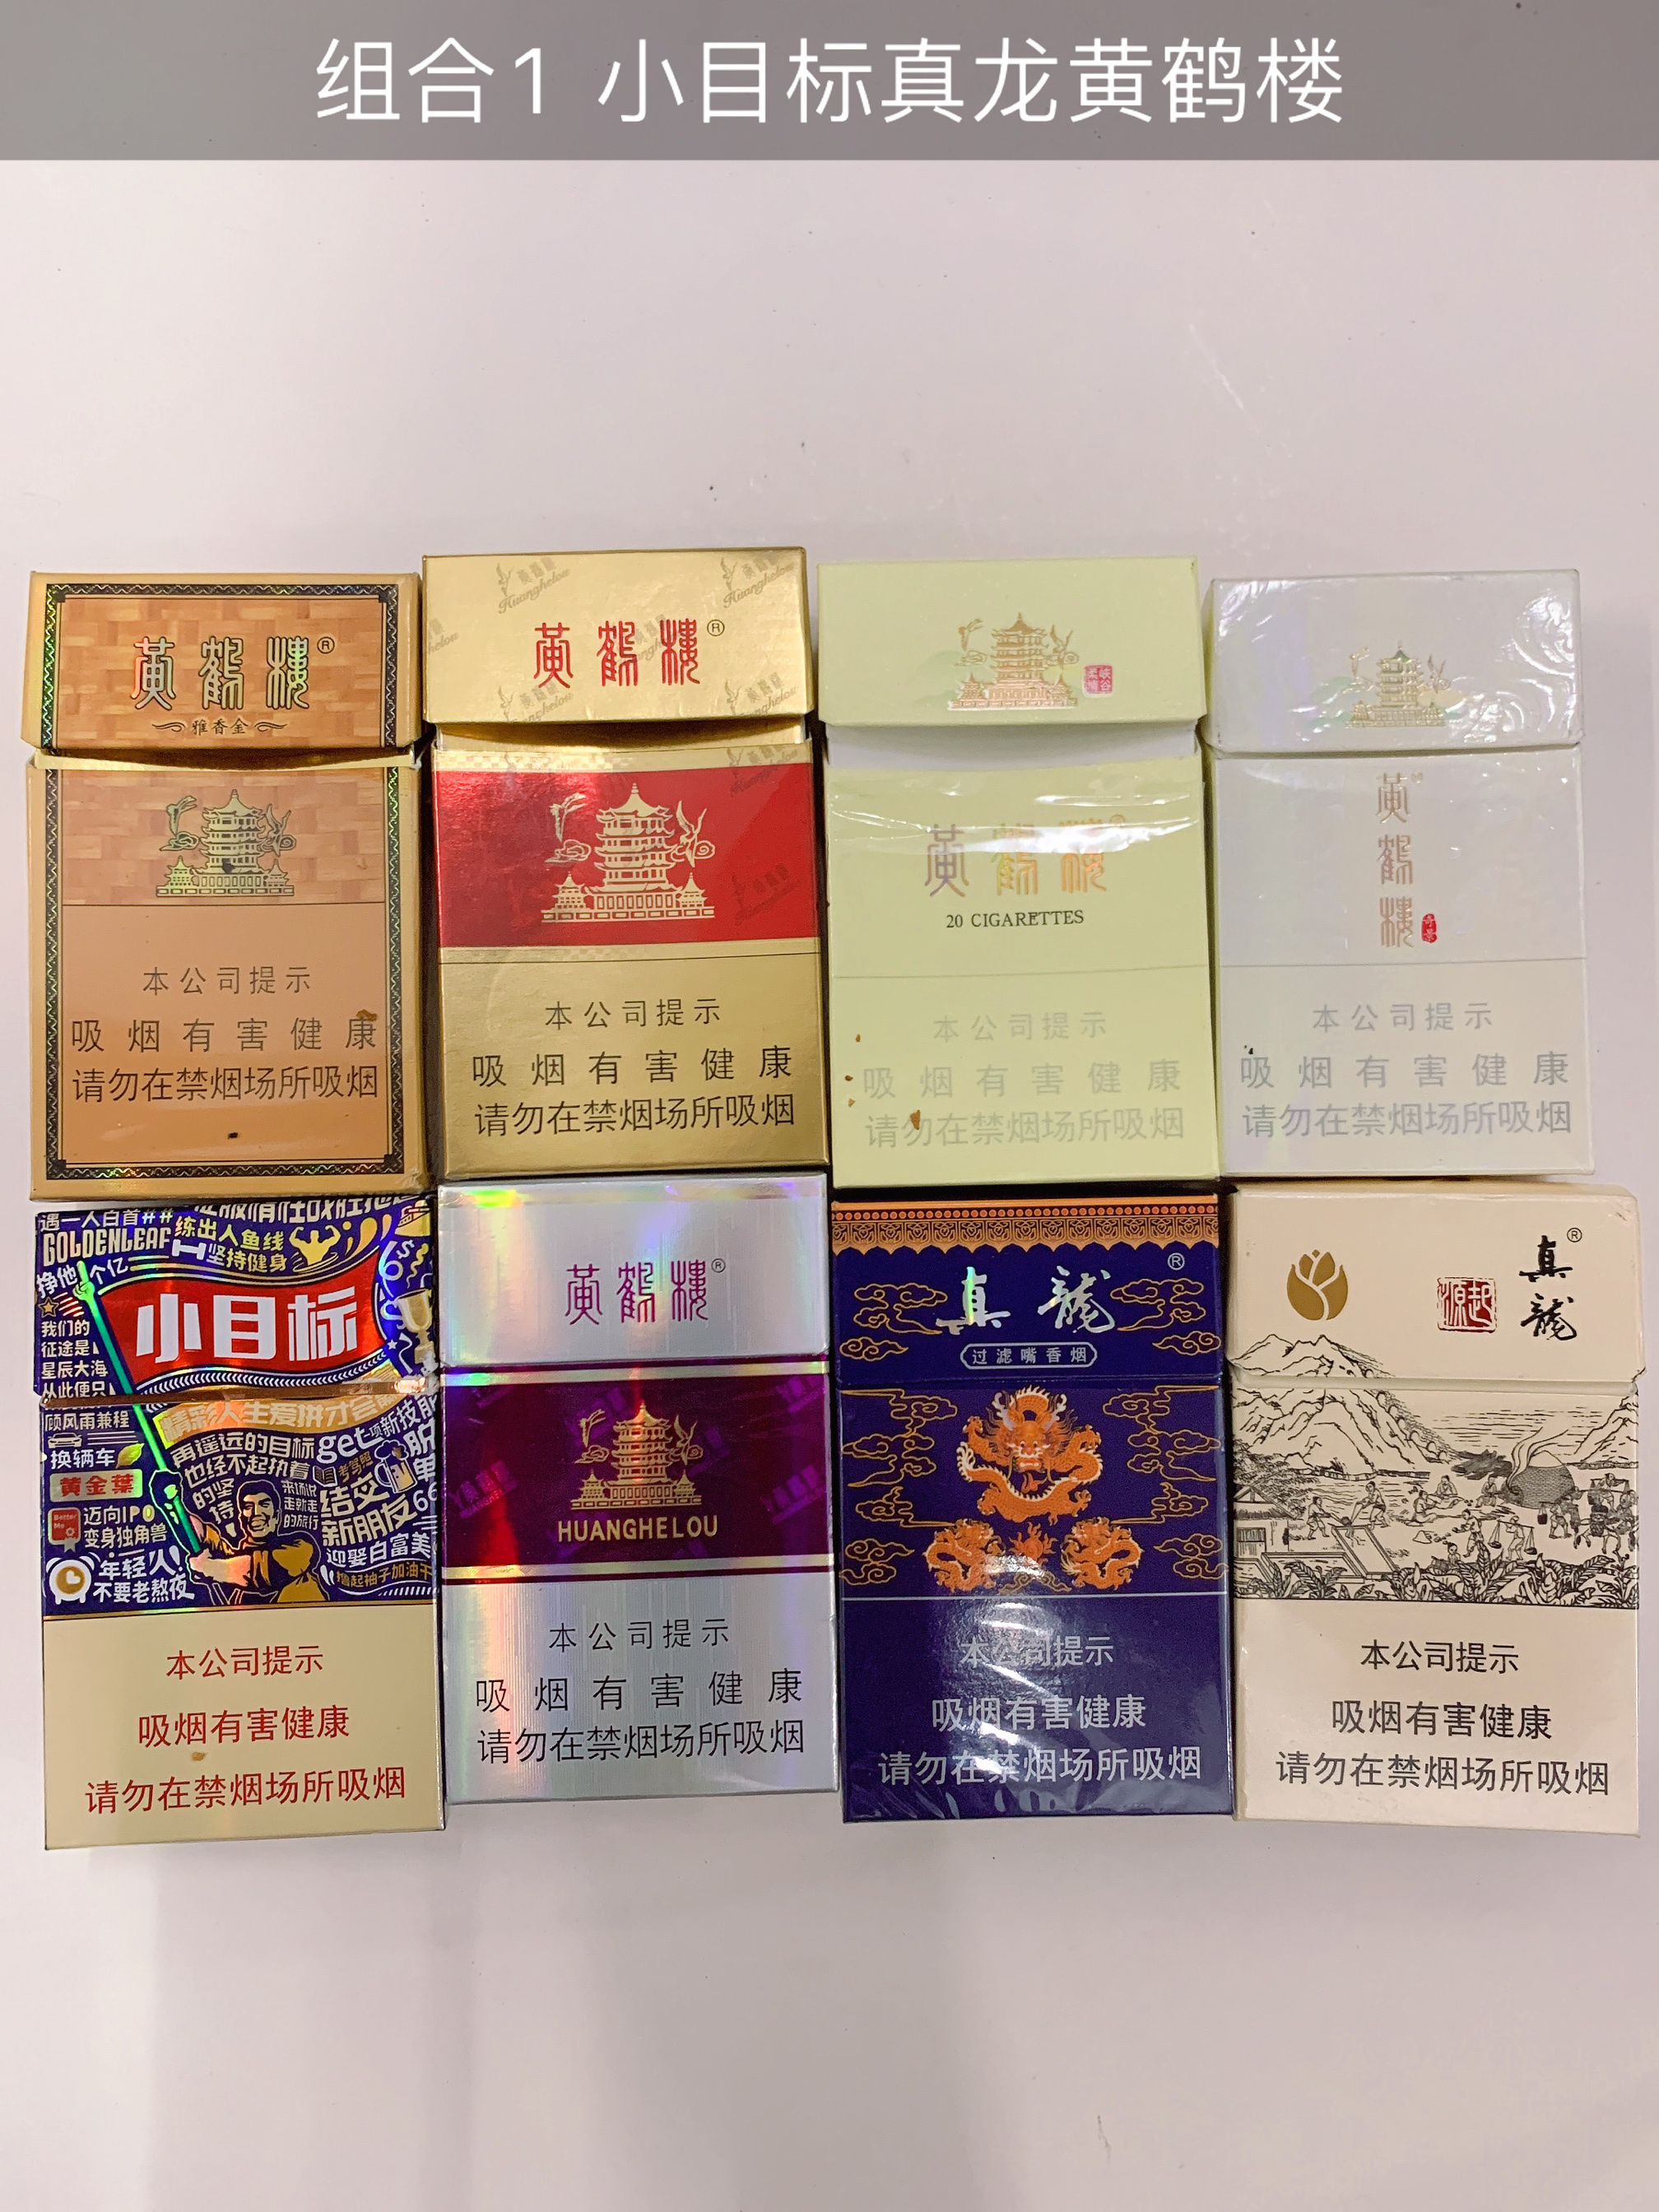 烟盒香港烟盒外国烟盒轰轰卡真龙稀有烟卡呸呸卡小目标限量版烟盒